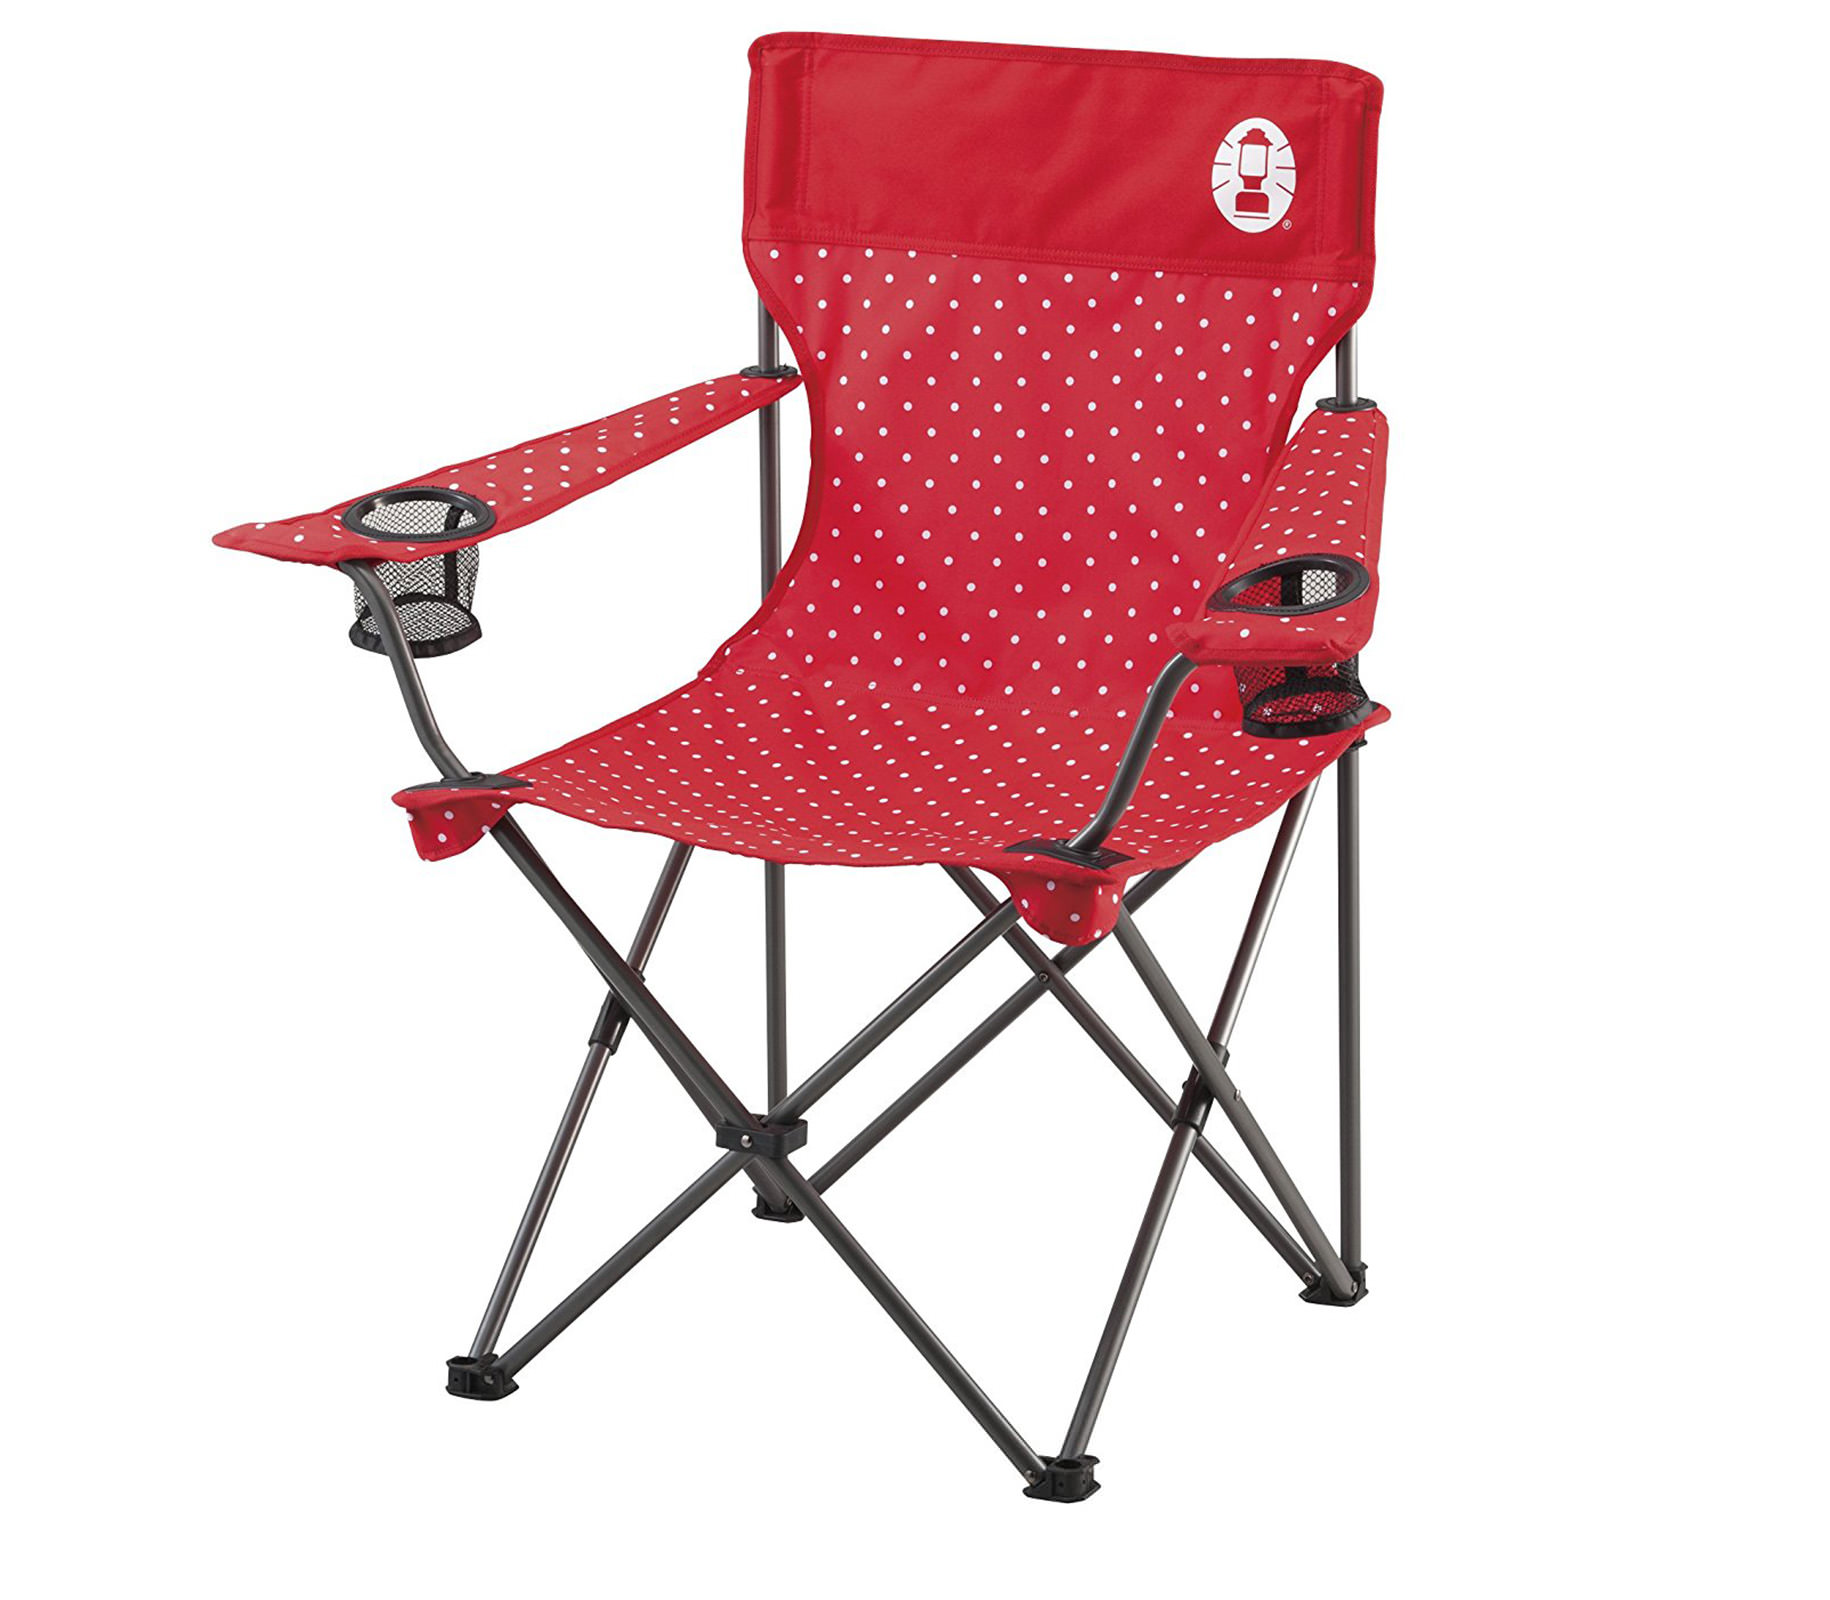 ghe-xep-coleman-resort-chair-red-dot-2000016998-7591-wetrek_vn